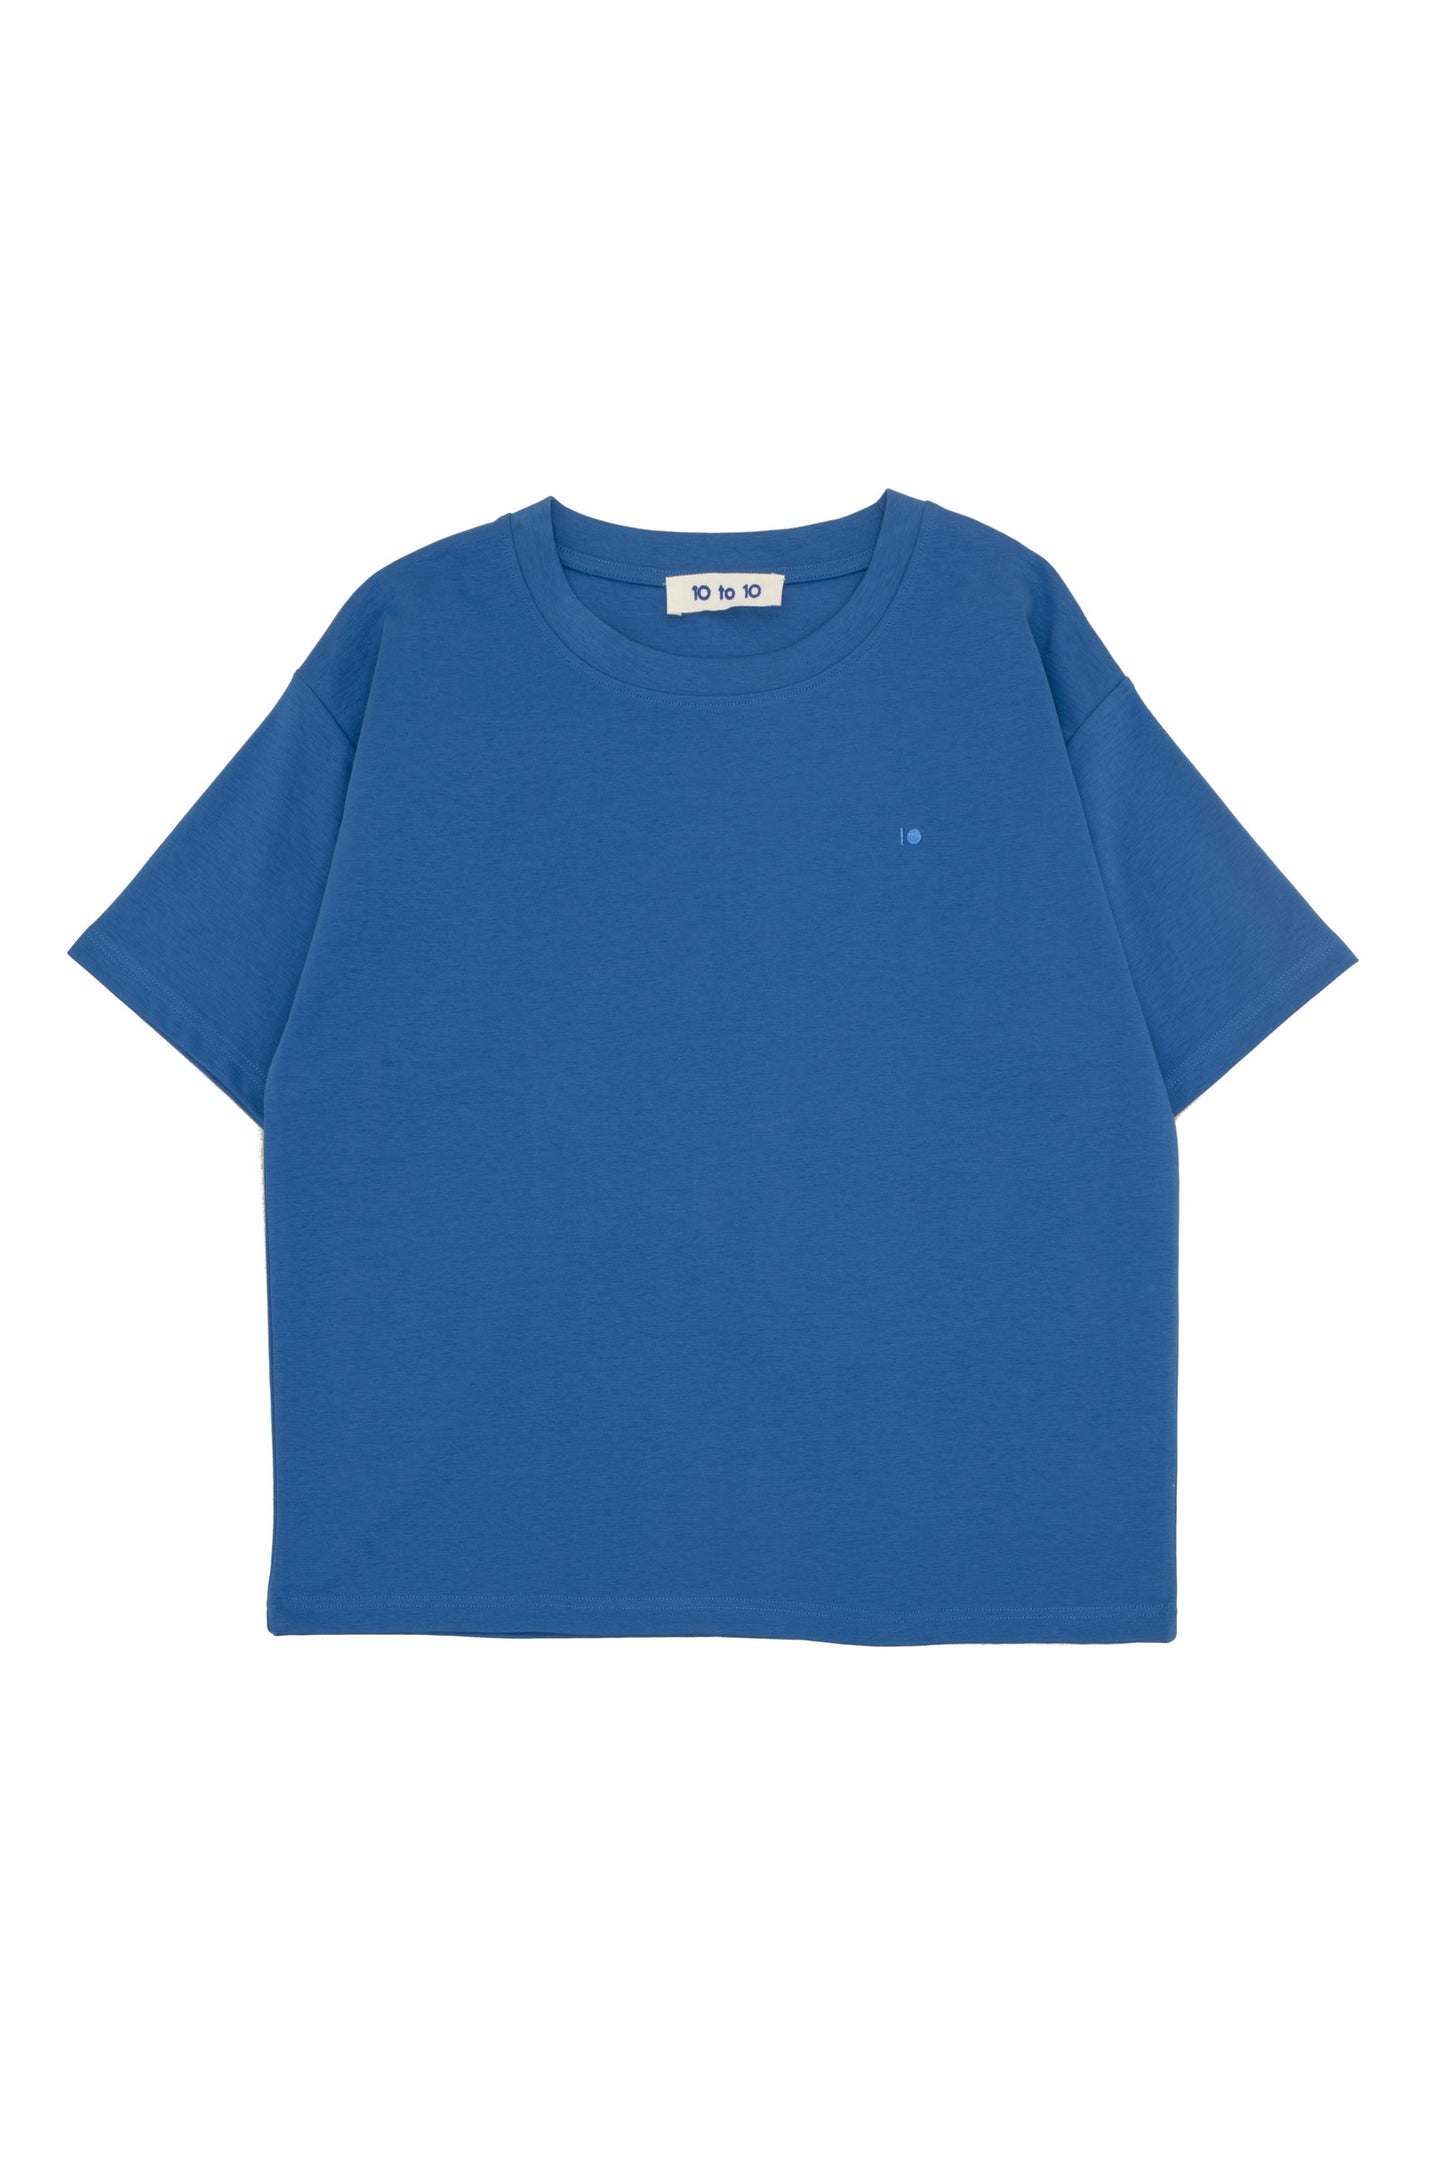 10 to 10 Basic Unisex Blue T-Shirt